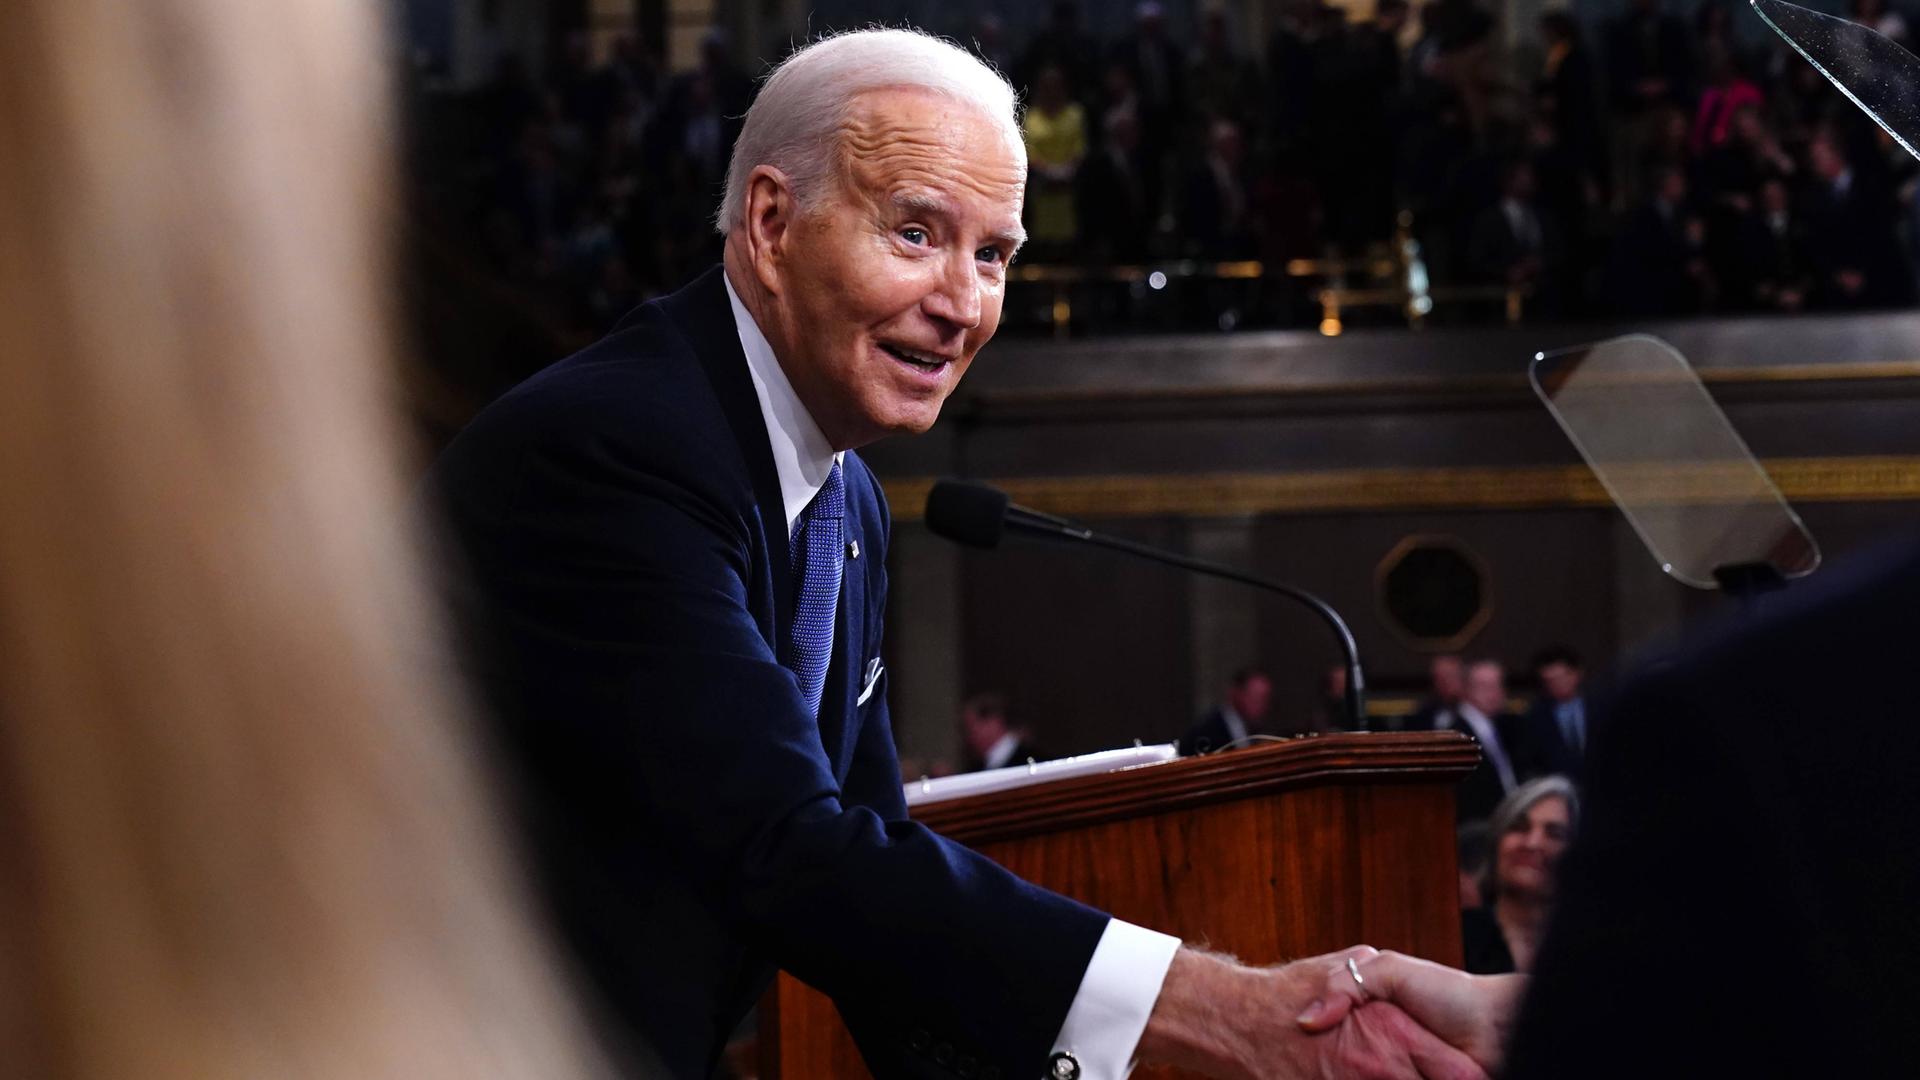 US-Präsident Joe Biden reicht jemanden die Hand.